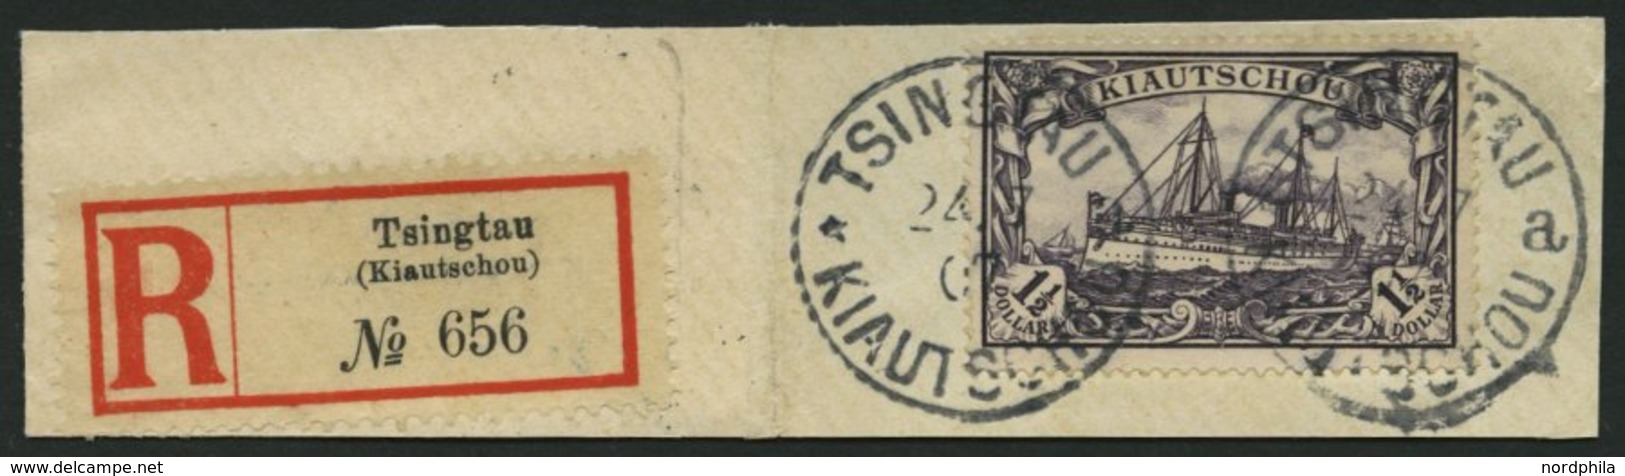 KIAUTSCHOU 26A BrfStk, 1905, 11/2 $ Schwarzviolett, Ohne Wz., Gezähnt A, Großes Prachtbriefstück Mit R-Zettel, Fotoattes - Kiautchou